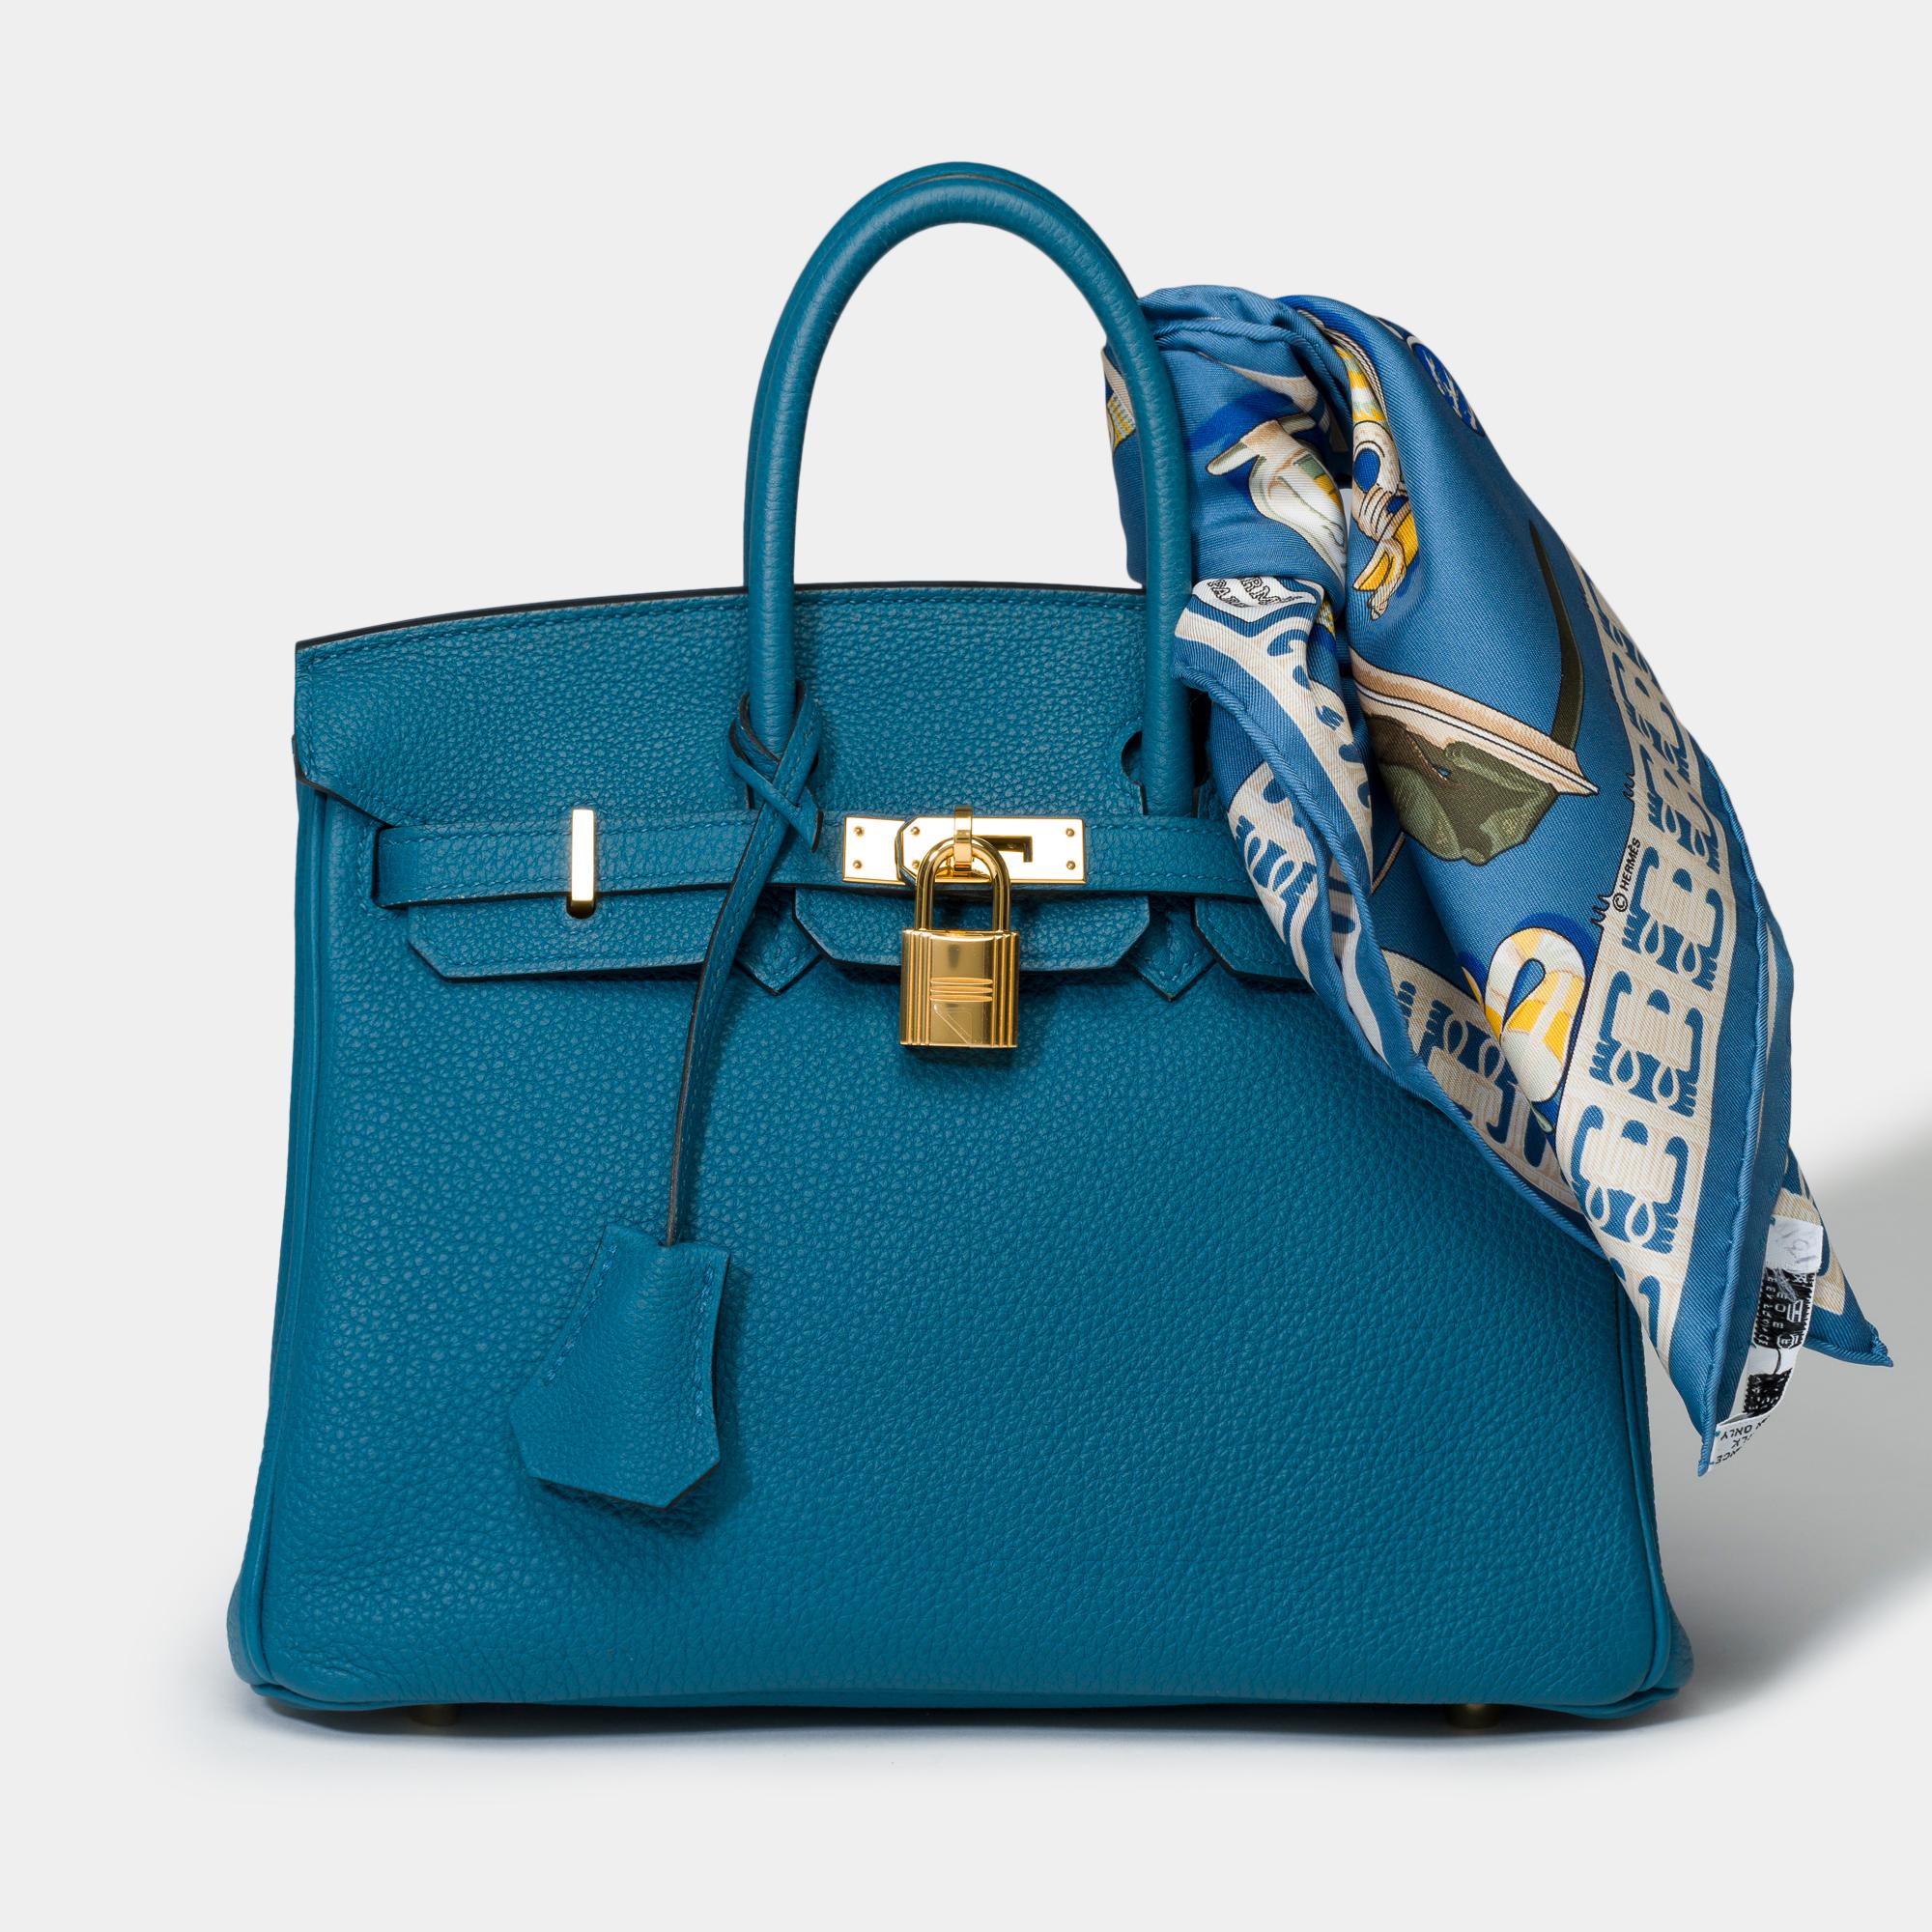 Außergewöhnliche Handtasche Birkin 25 Leder Togo Kobaltblau, vergoldetes Metall trimmen, Doppelgriff blauem Leder ermöglicht Hand tragen

Klappenverschluss
Innenfutter aus blauem Leder, eine Tasche mit Reißverschluss, eine aufgesetzte